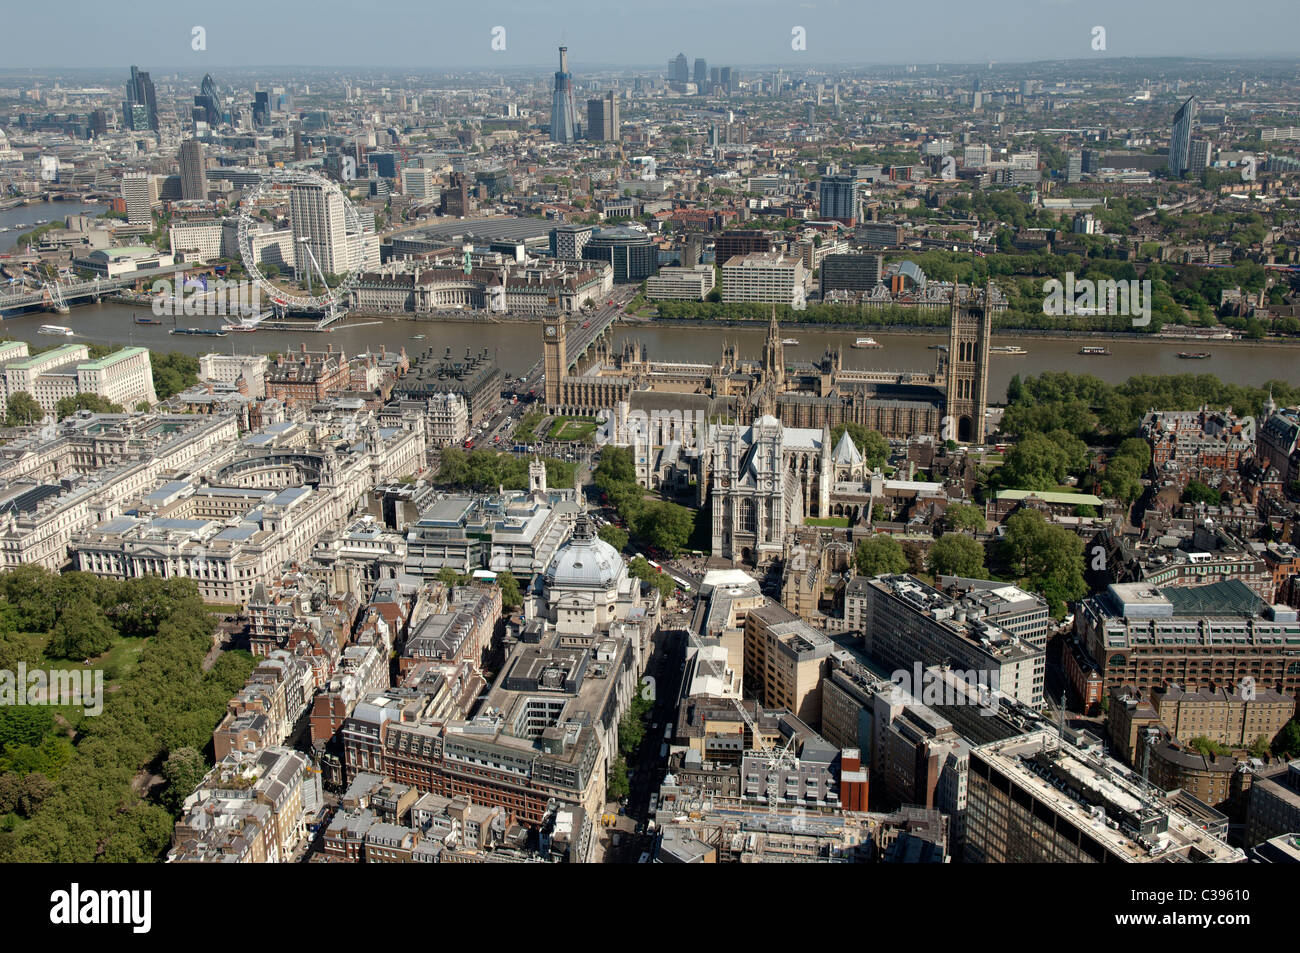 L'Abbaye de Westminster, le Parlement et de la ville de Londres à partir de l'air. Banque D'Images